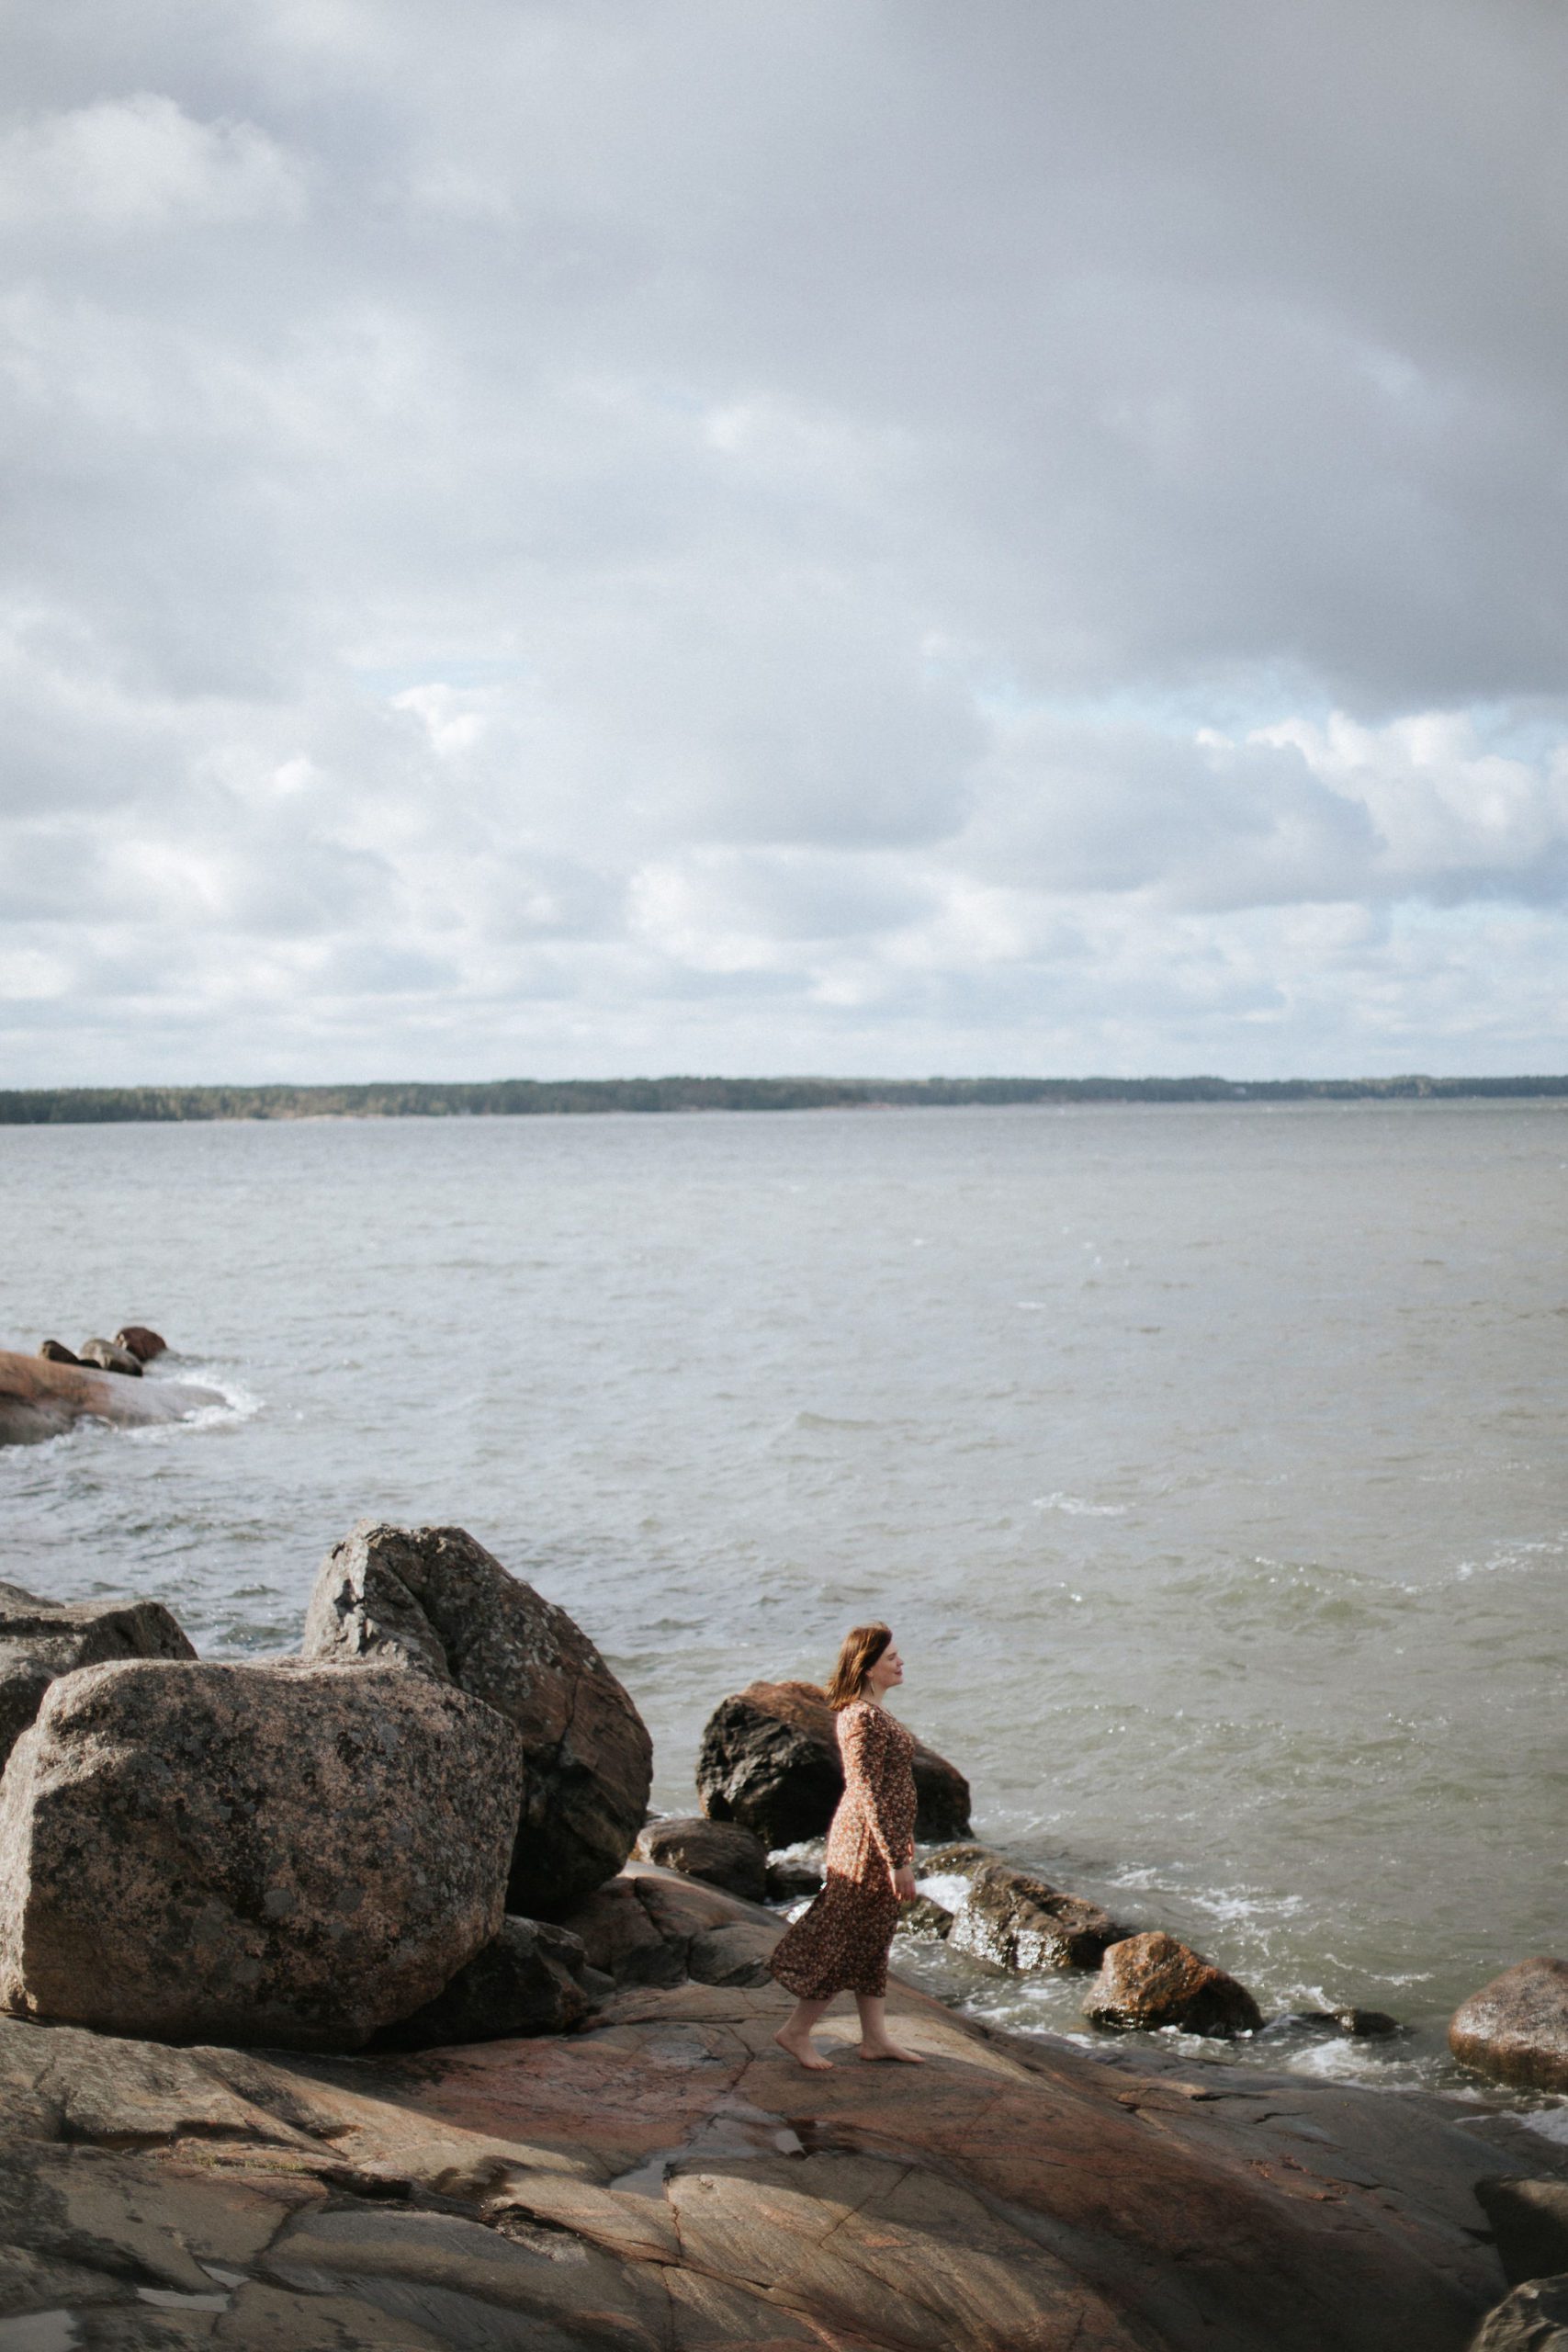 Foto von Katharina Reichardt bei ihrem eigenen Boudoirshooting am Strand von Finnland